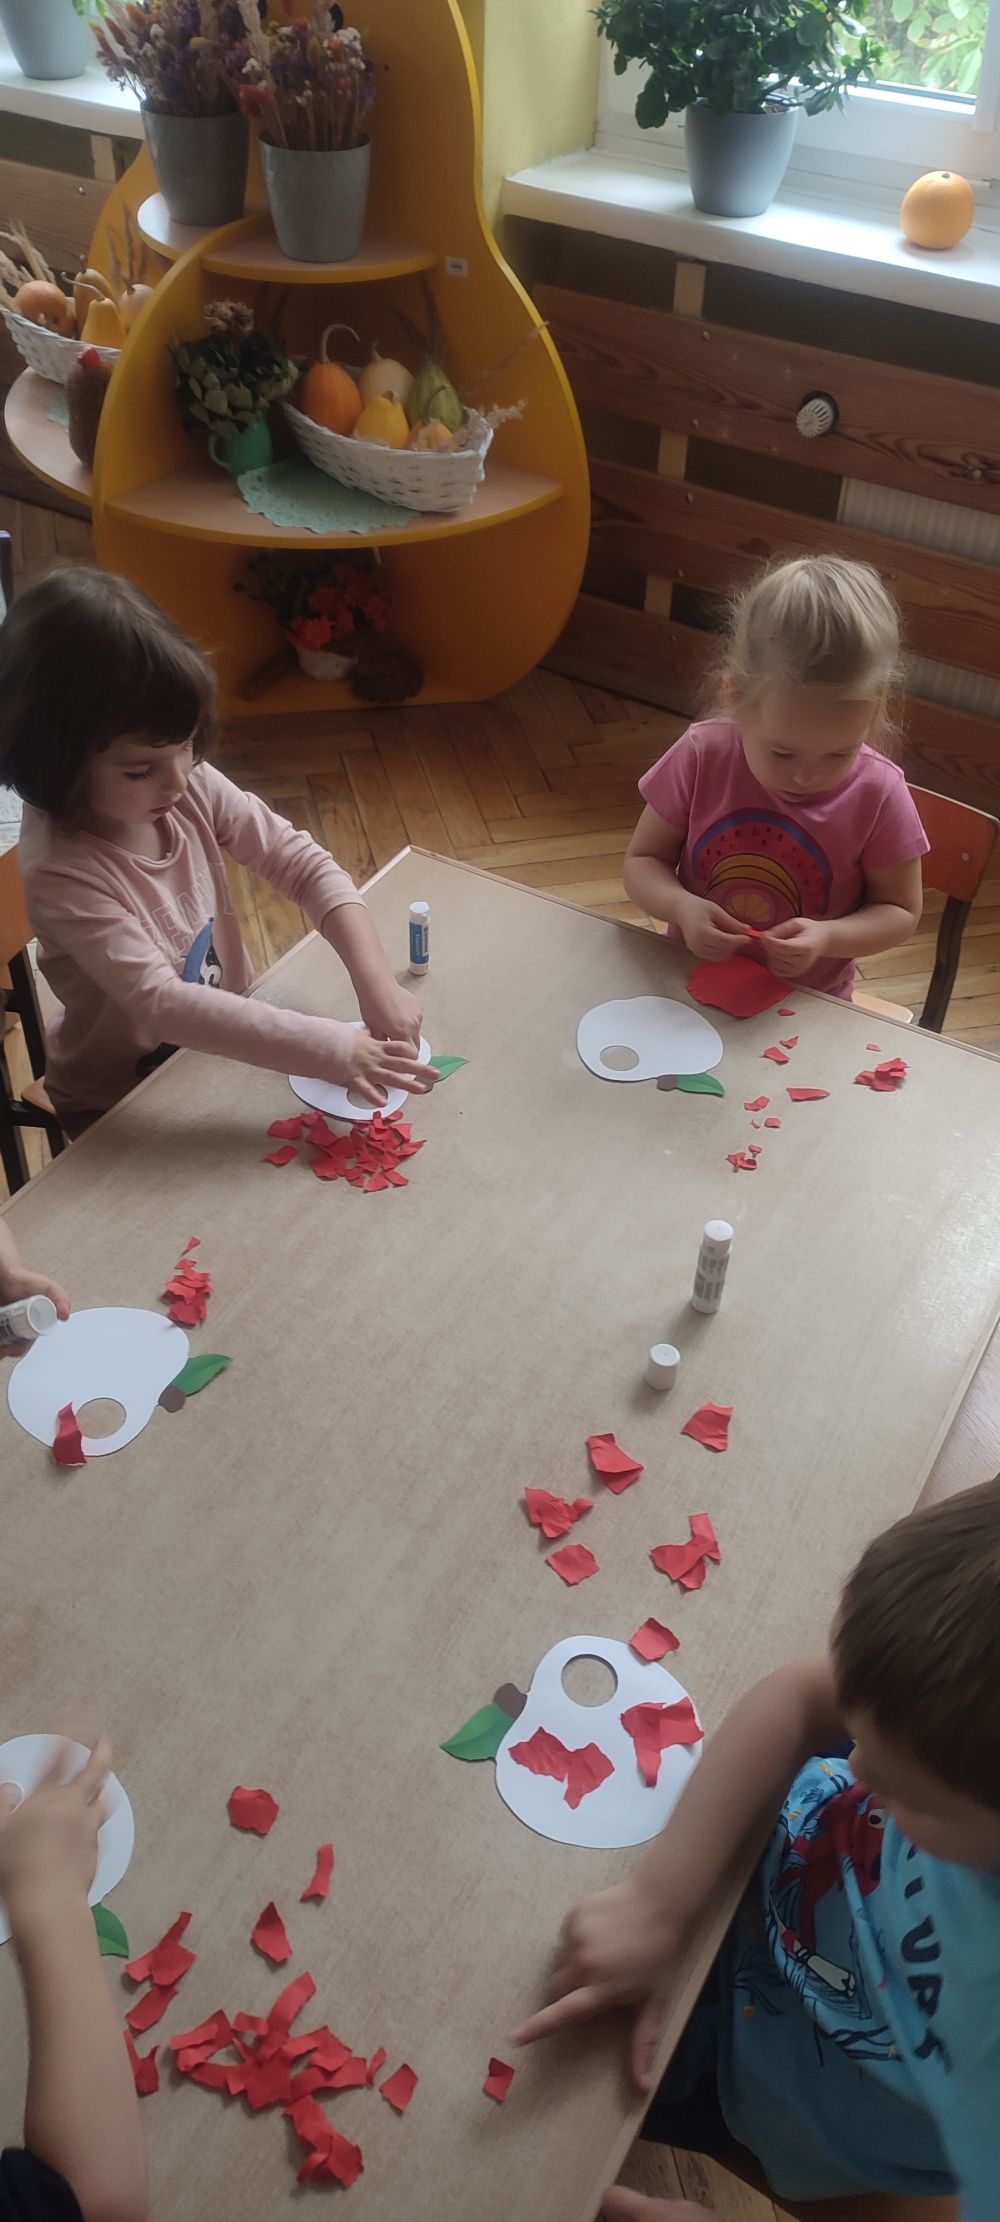 Dzieci siedzą przy stole i wyklejają jabłka czerwonymi kawałkami kartki papieru